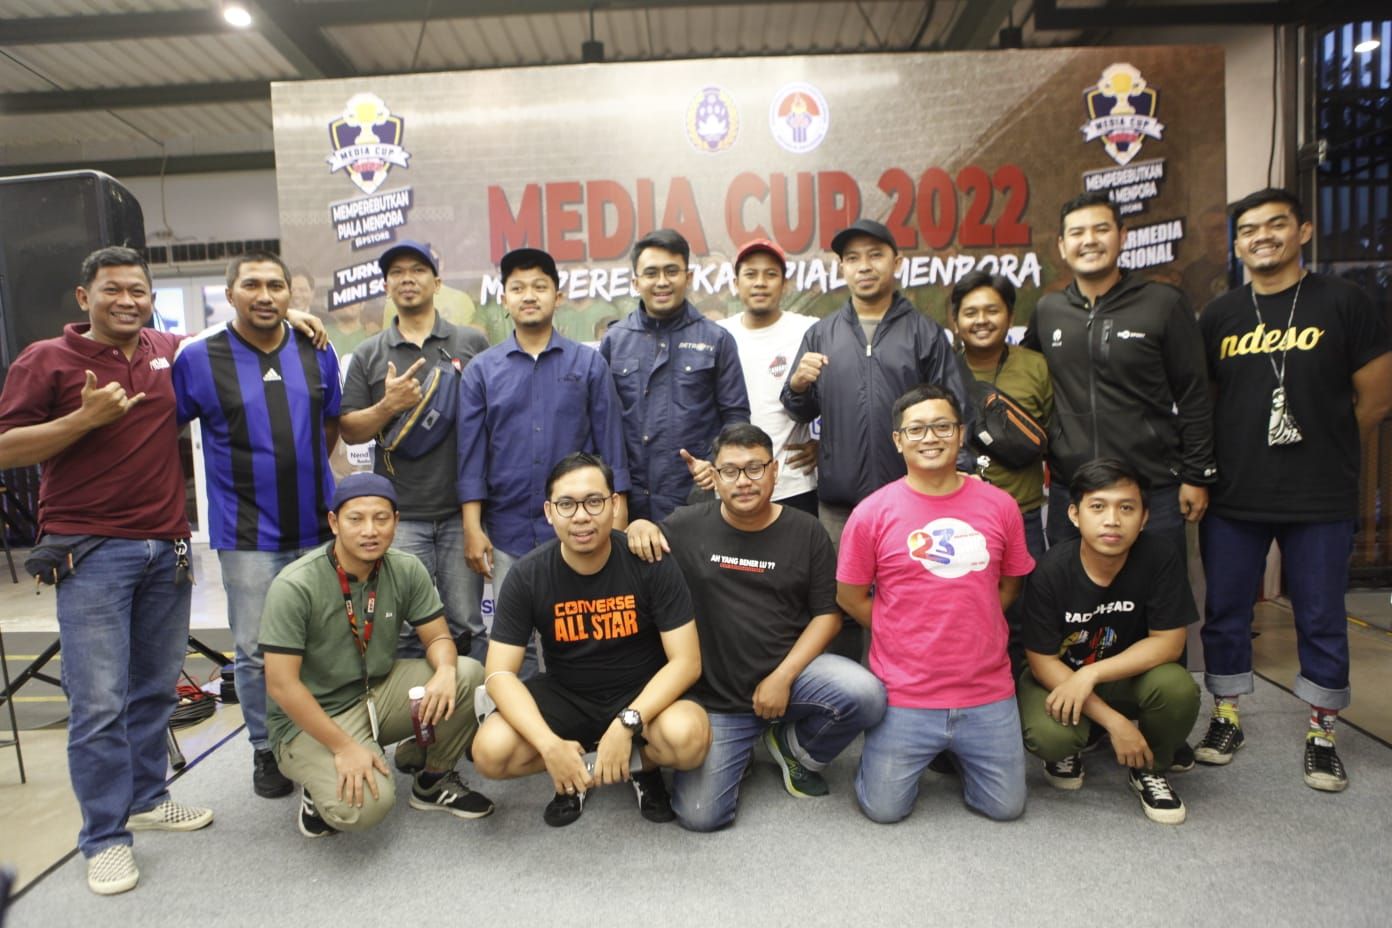 Para perwakilan tim peserta Media Cup 2022 berfoto bersama setelah melakukan undian Media Cup 2022.